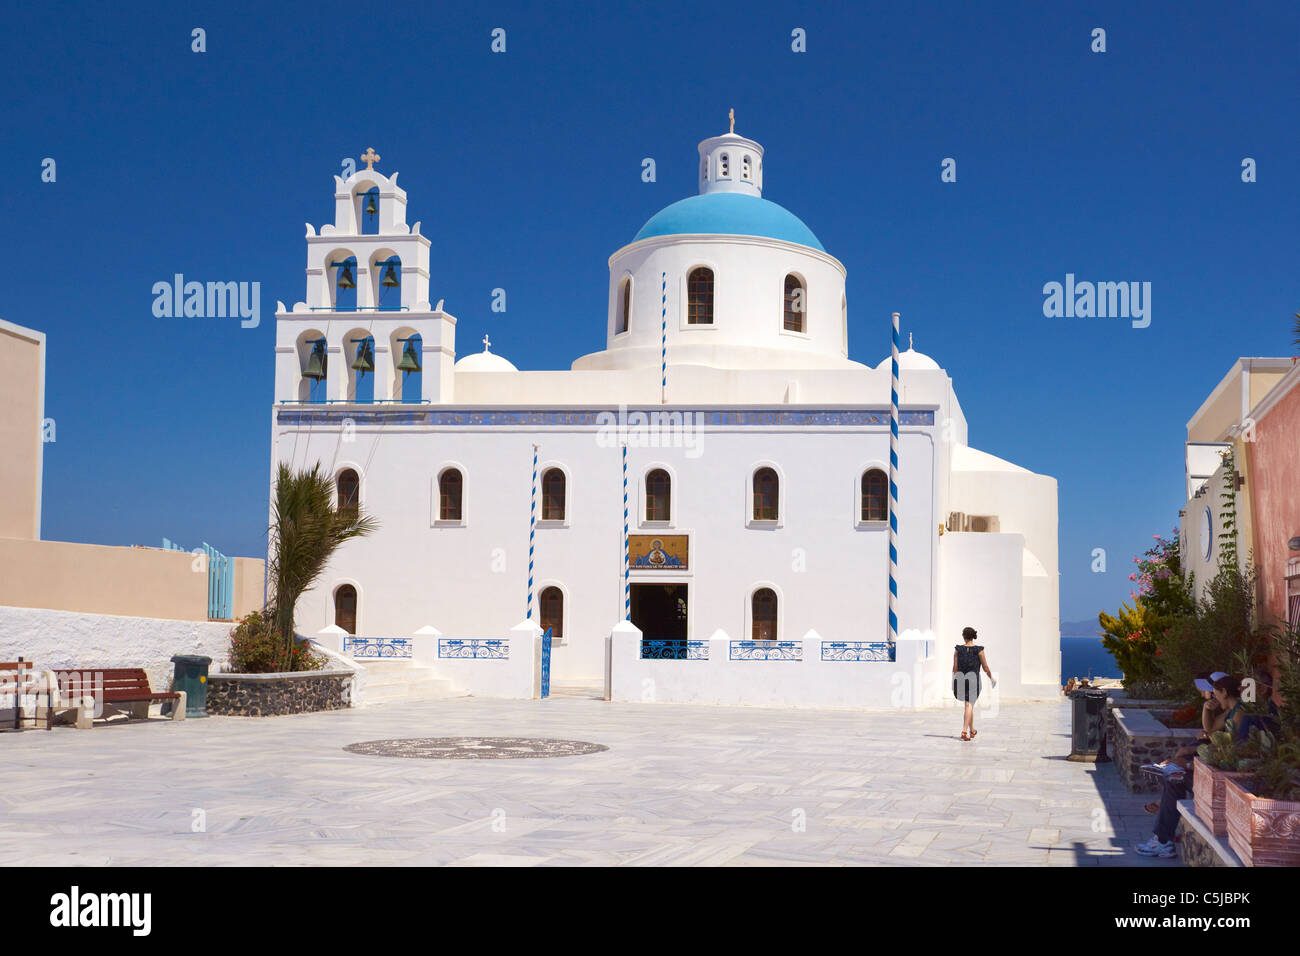 Chiesa Greca con torre campanaria nella cittadina di Oia, isola di Santorini, Cicladi, Grecia Foto Stock